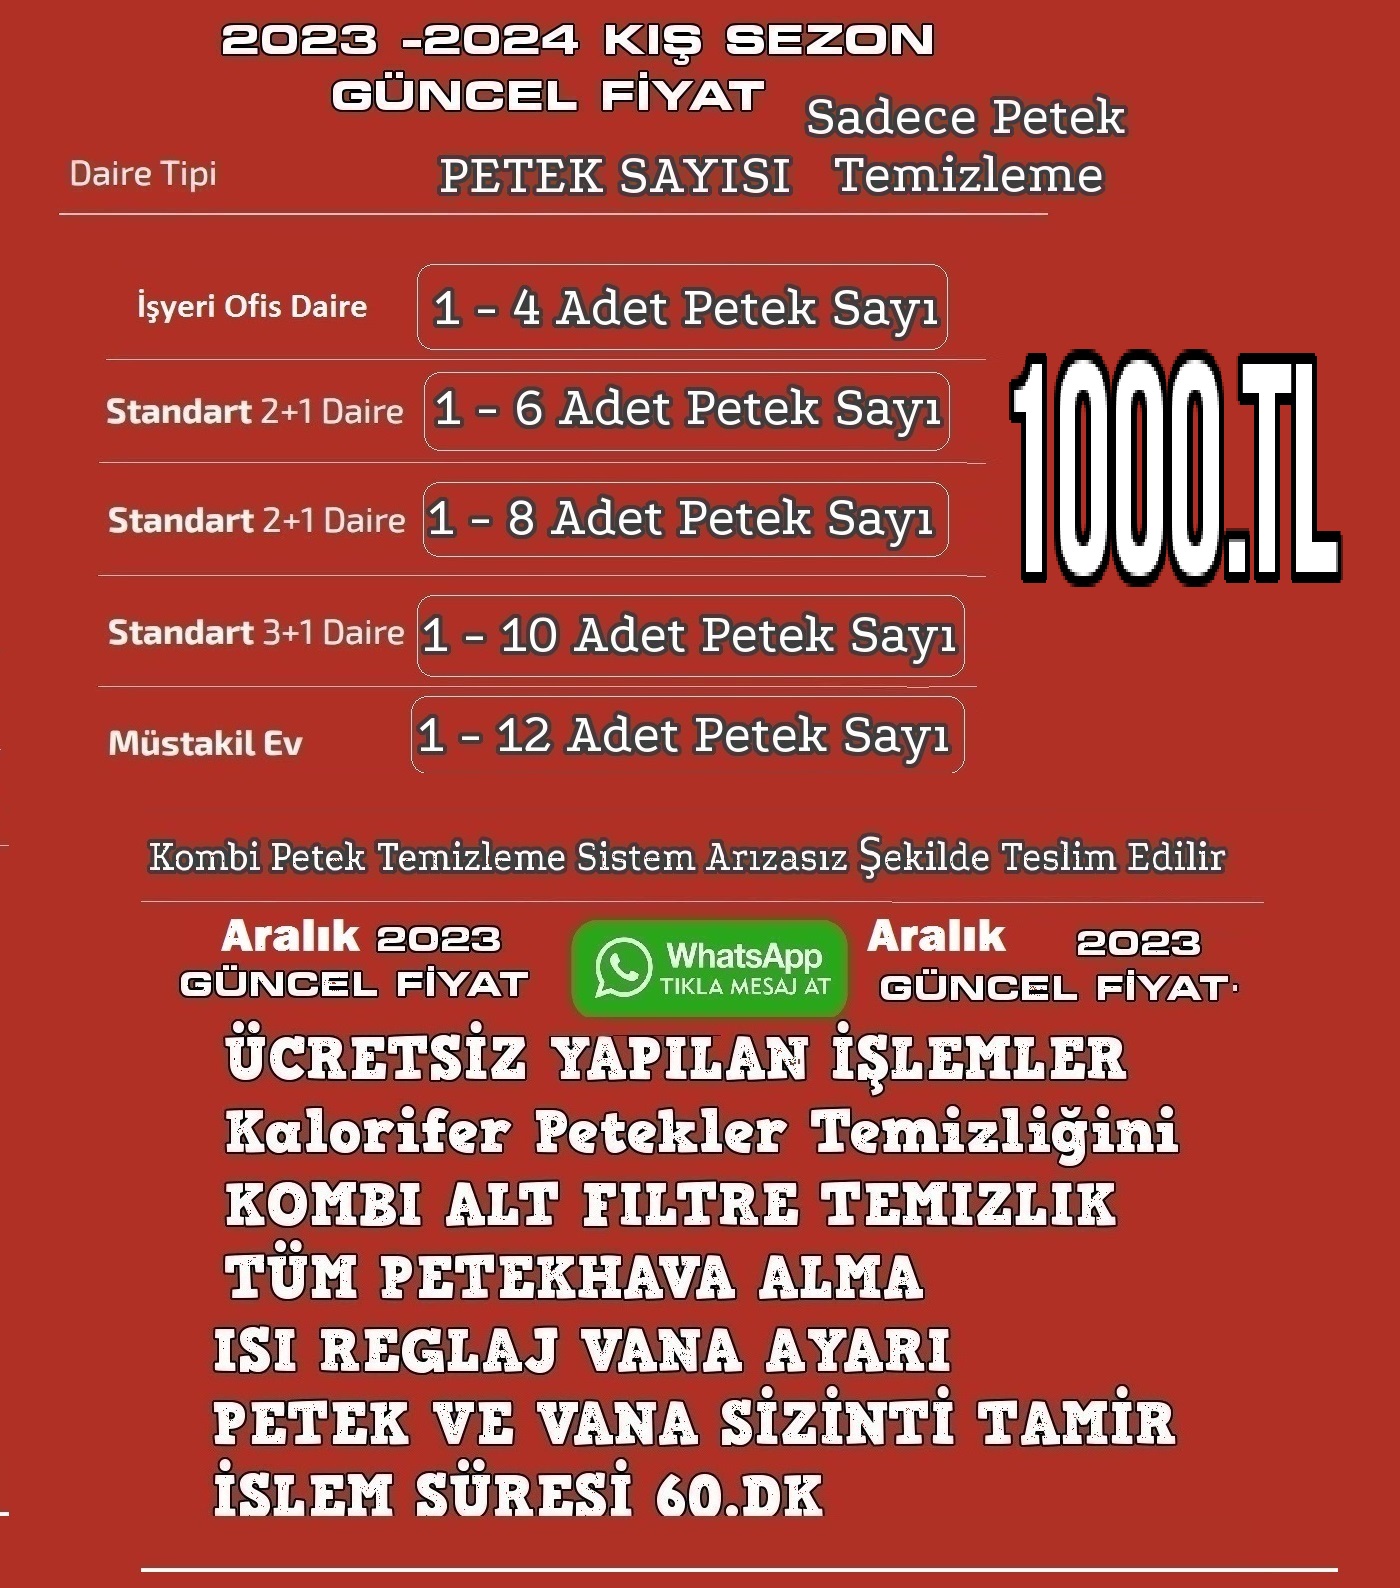 Beşiktaş Abbasağa Kombi Petek Temizliği